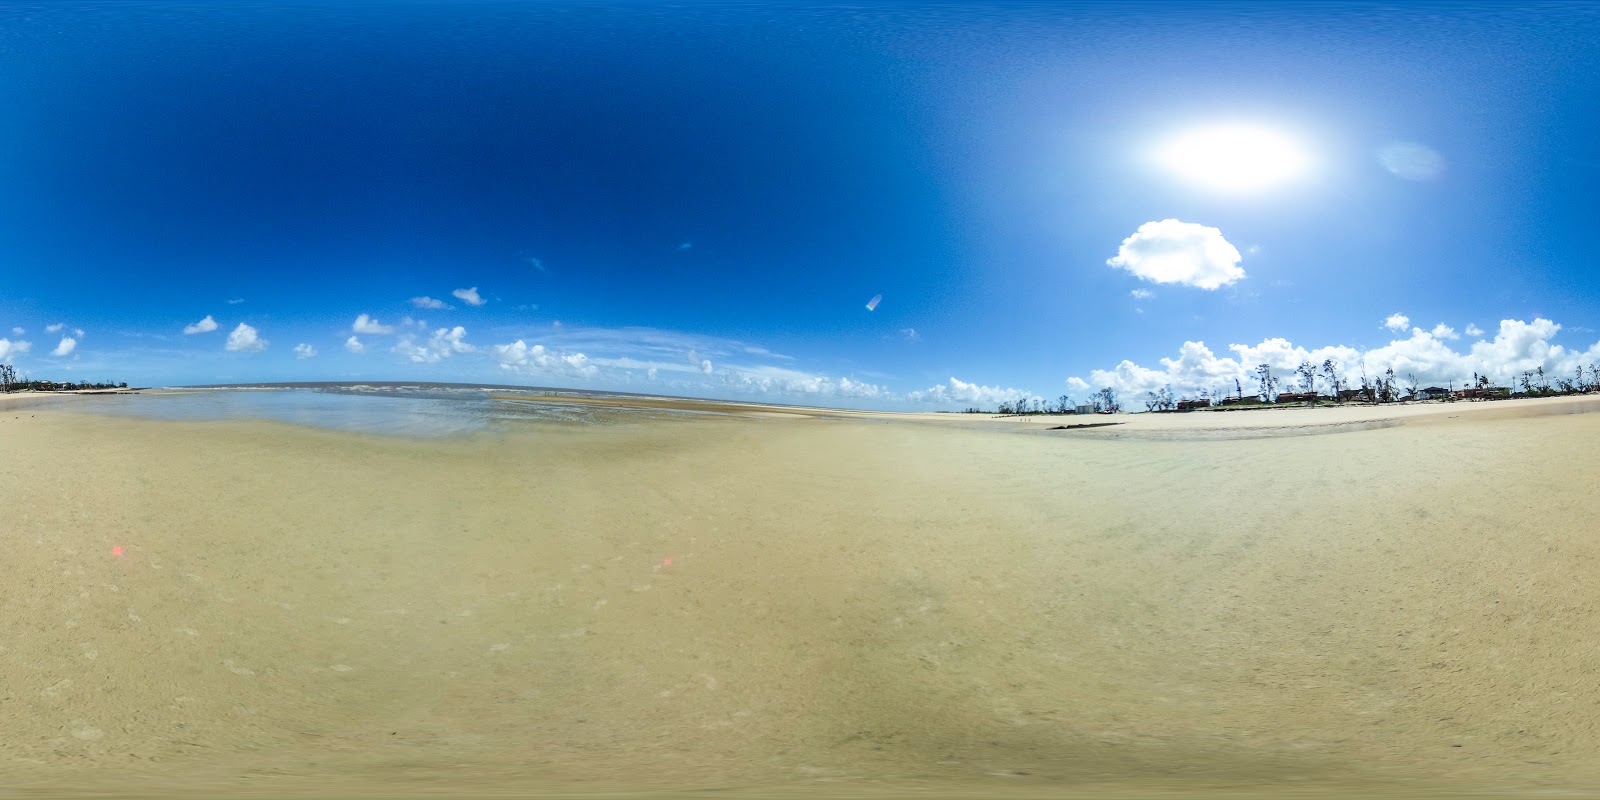 Foto av Beira Beach med turkos rent vatten yta